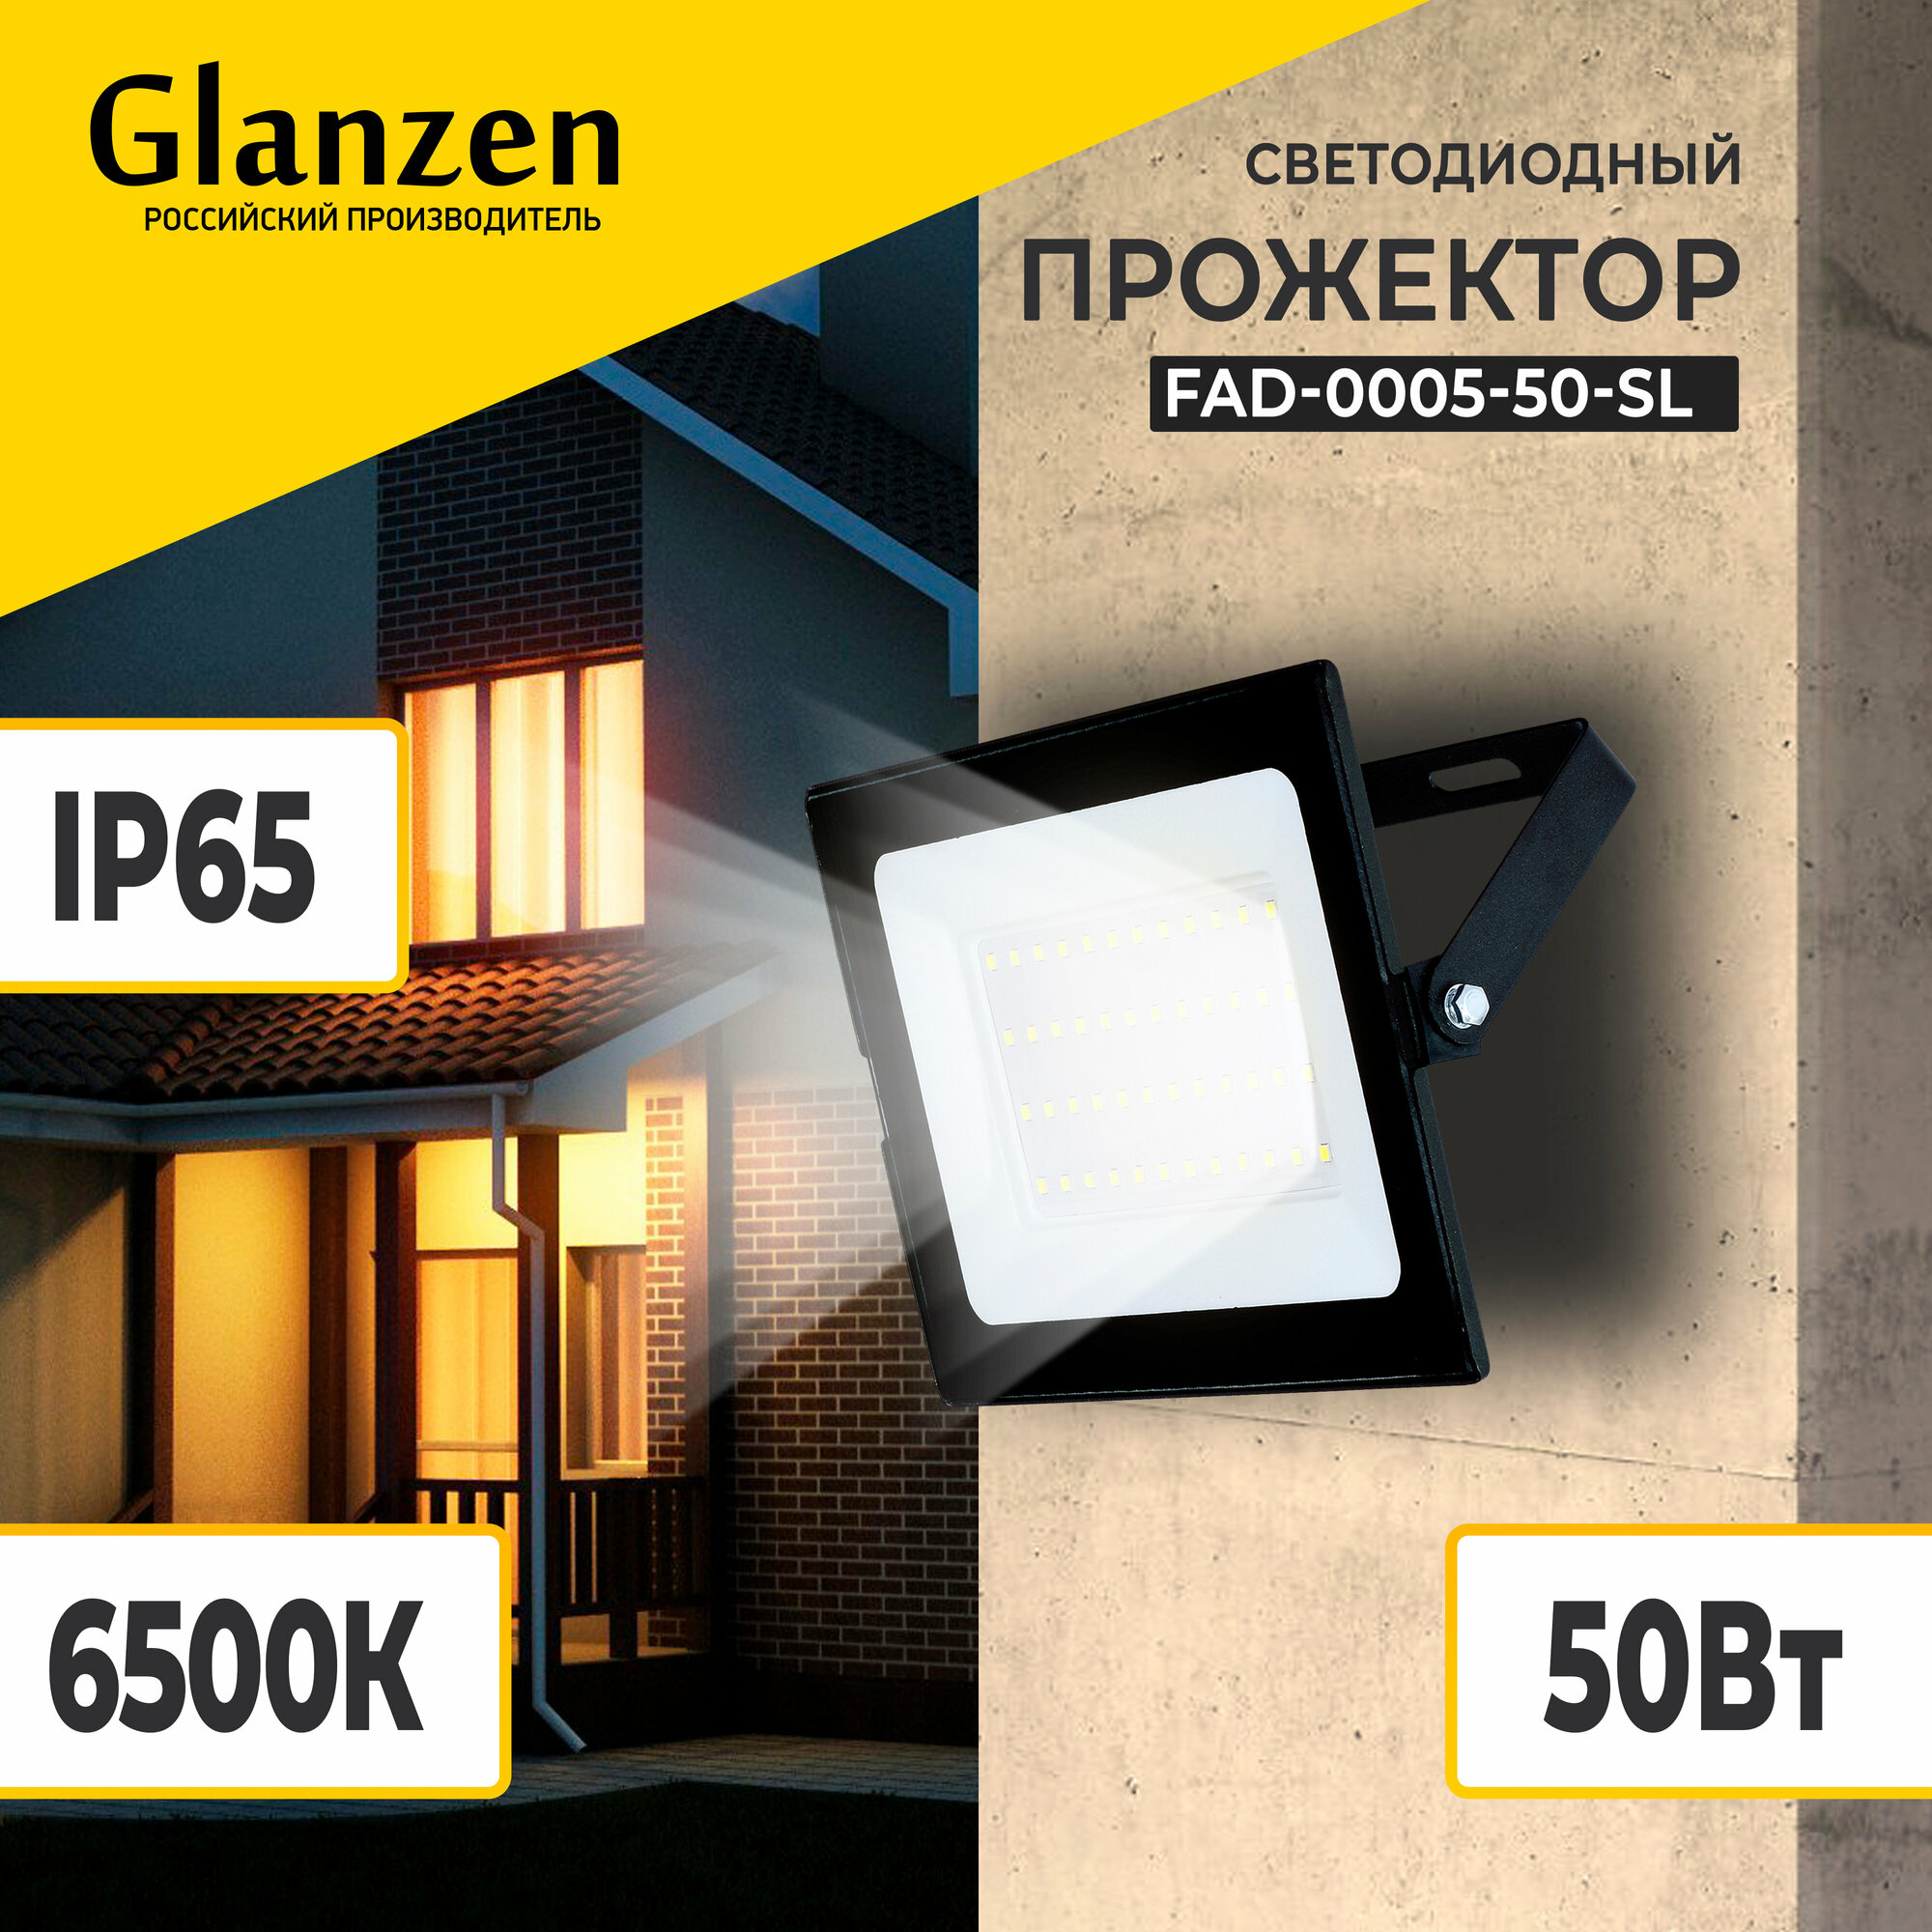 Прожектор светодиодный Glanzen FAD-0005-50-SL